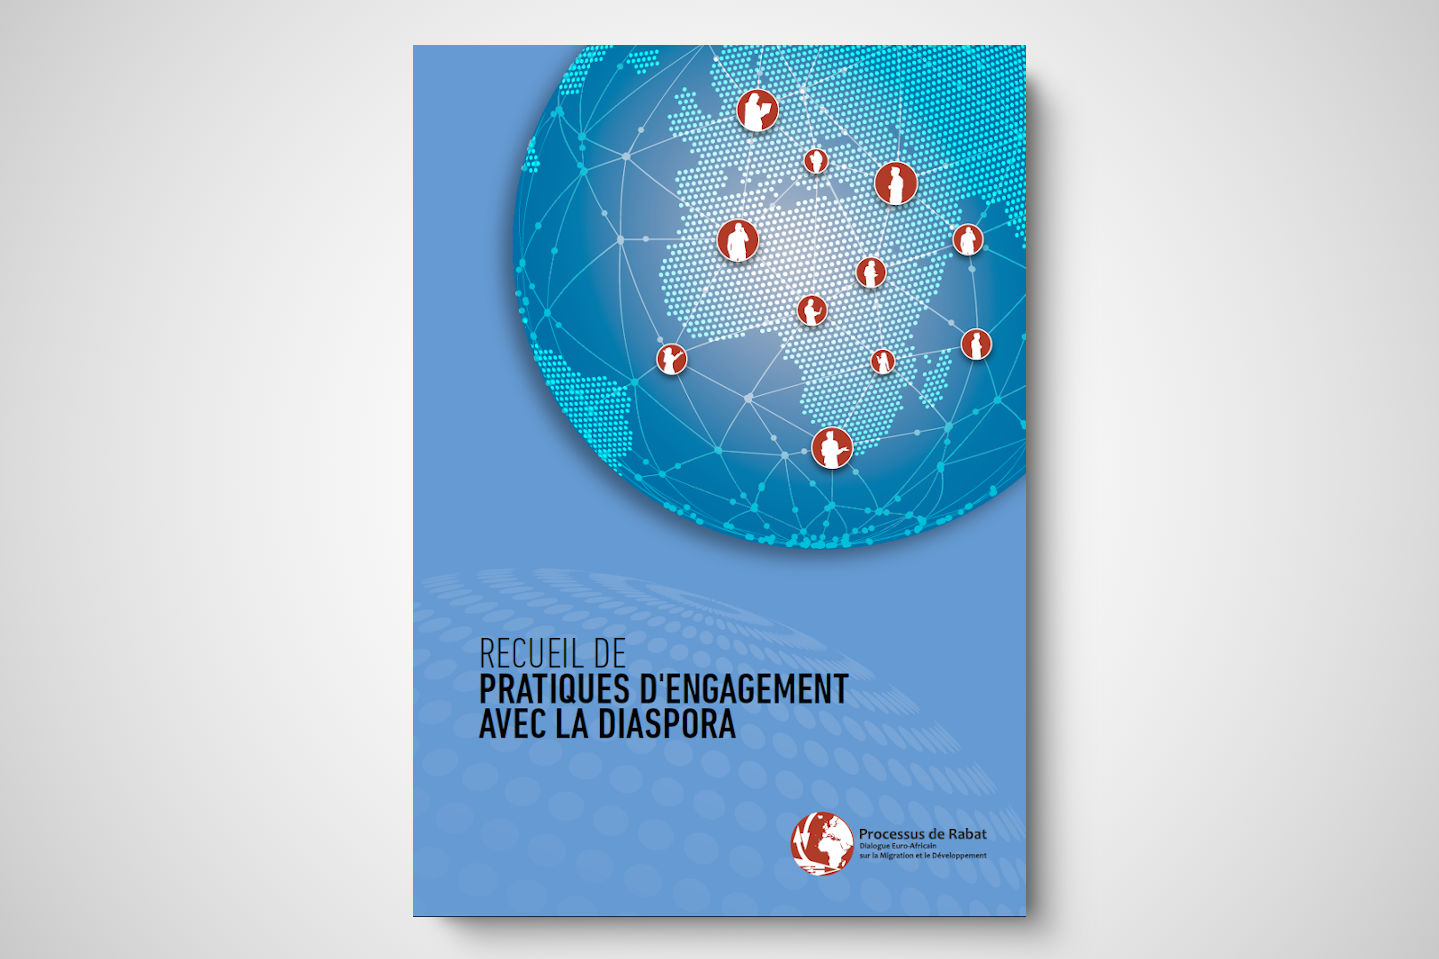 Publication: Recueil de pratiques d'engagement avec la diaspora